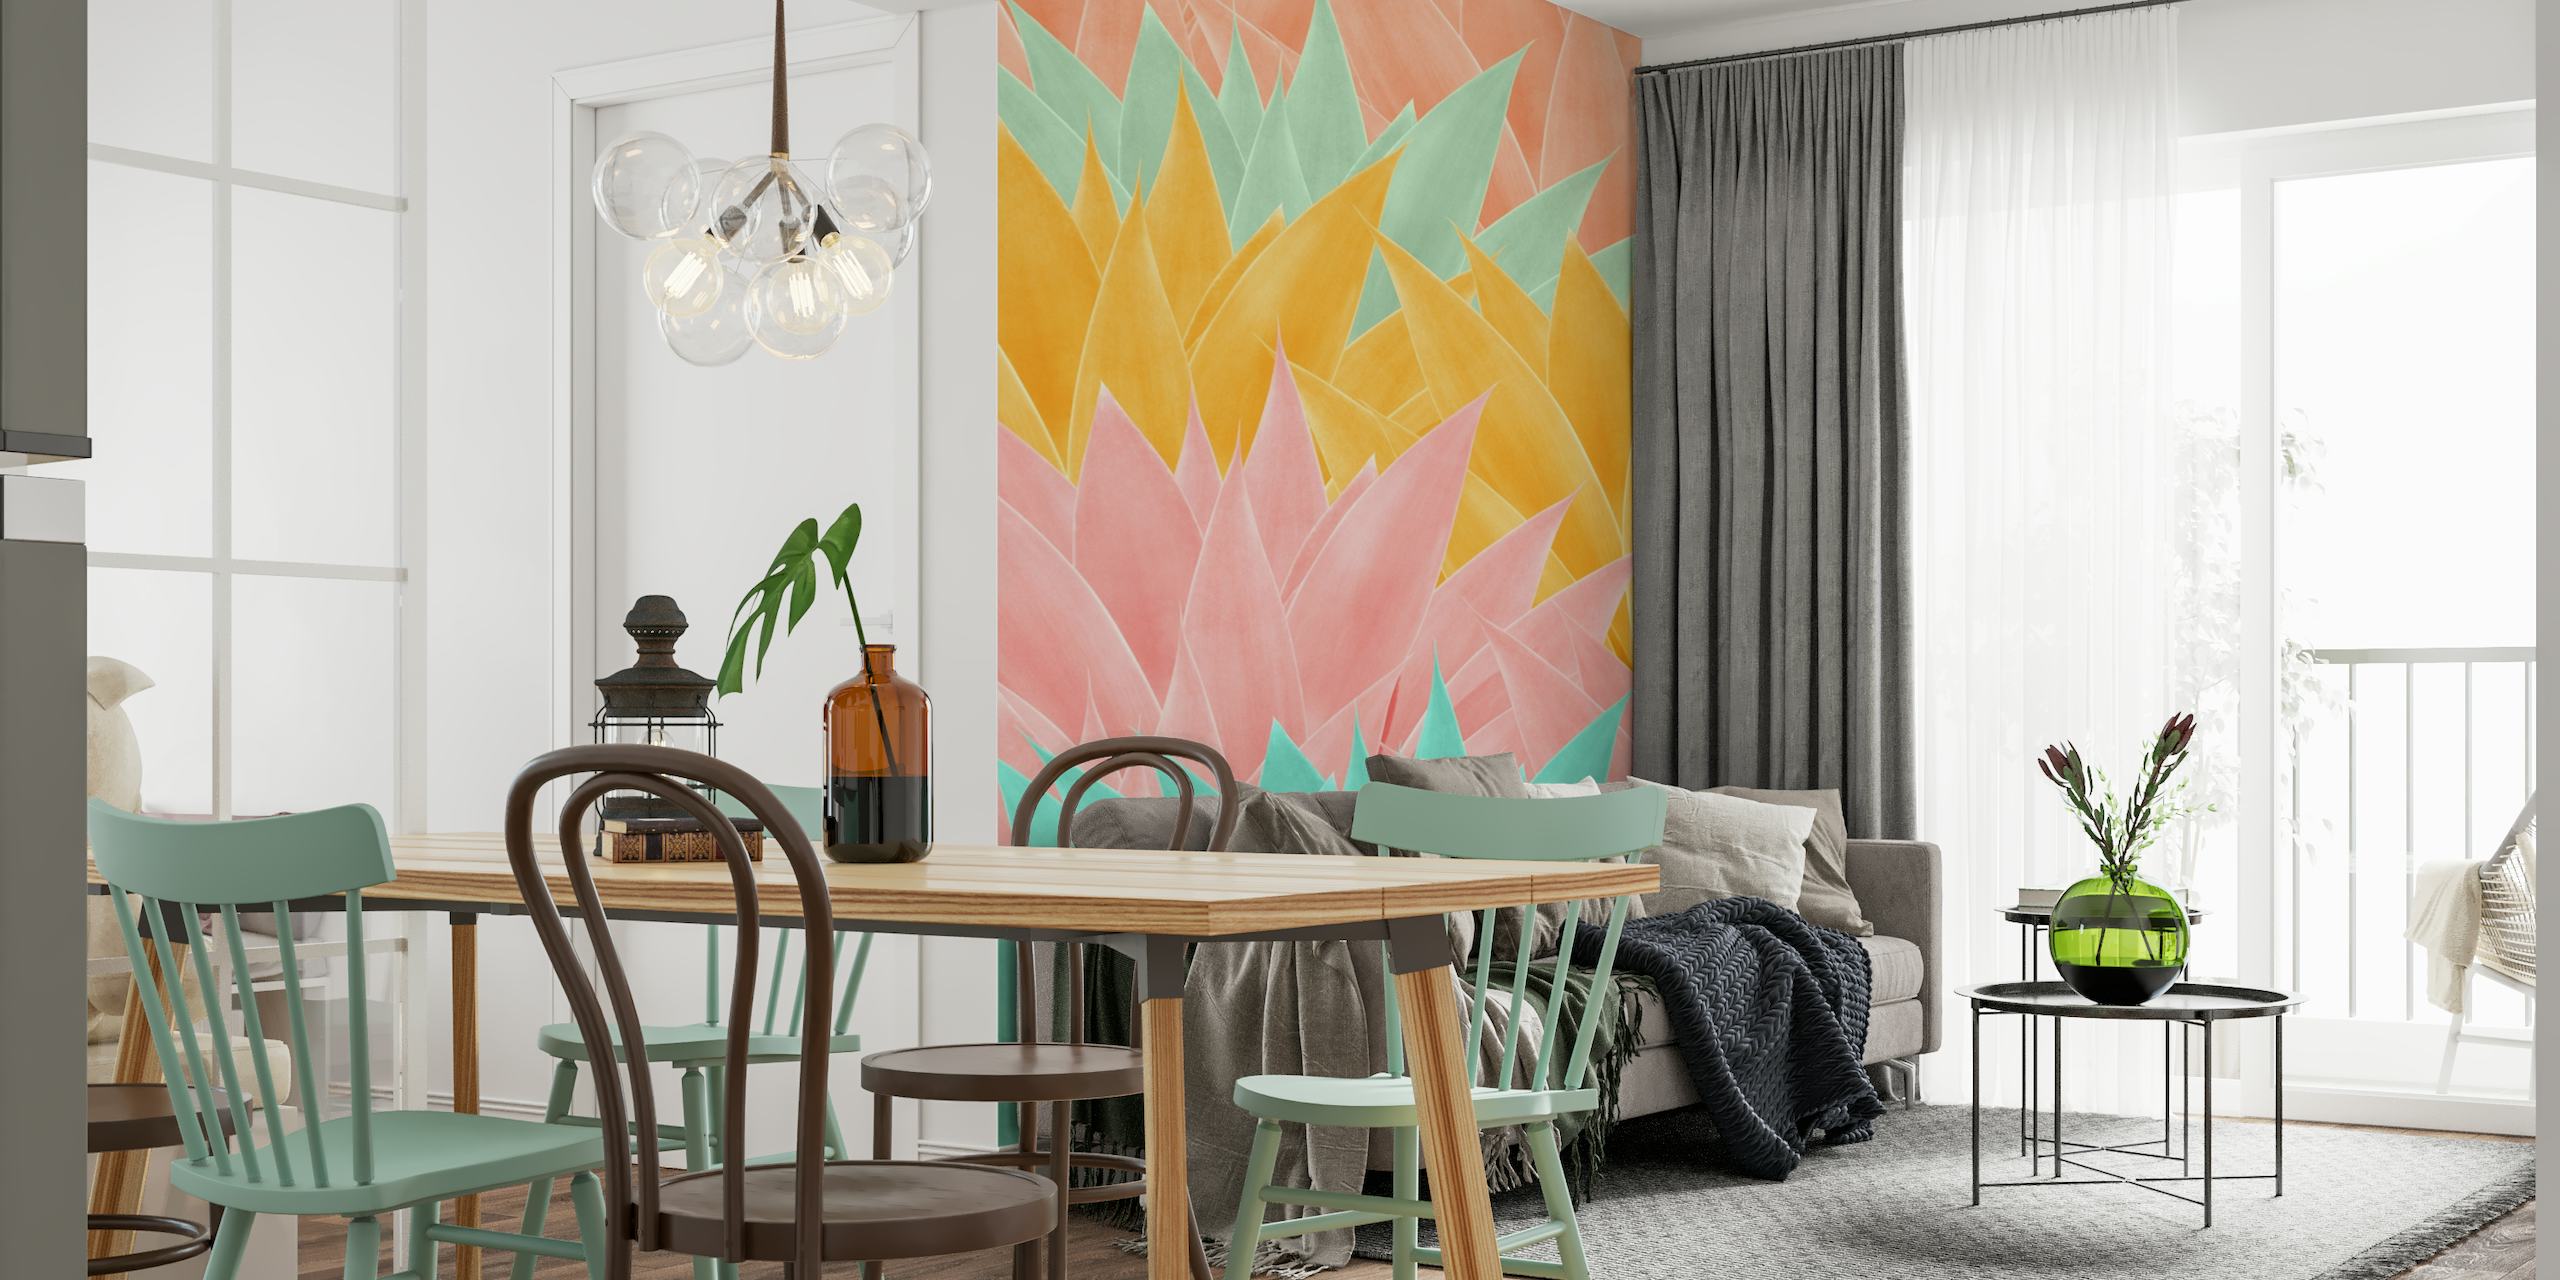 Fargerikt veggmaleri med agavebladmønster i nyanser av rosa, gult og aqua for moderne interiørdesign.